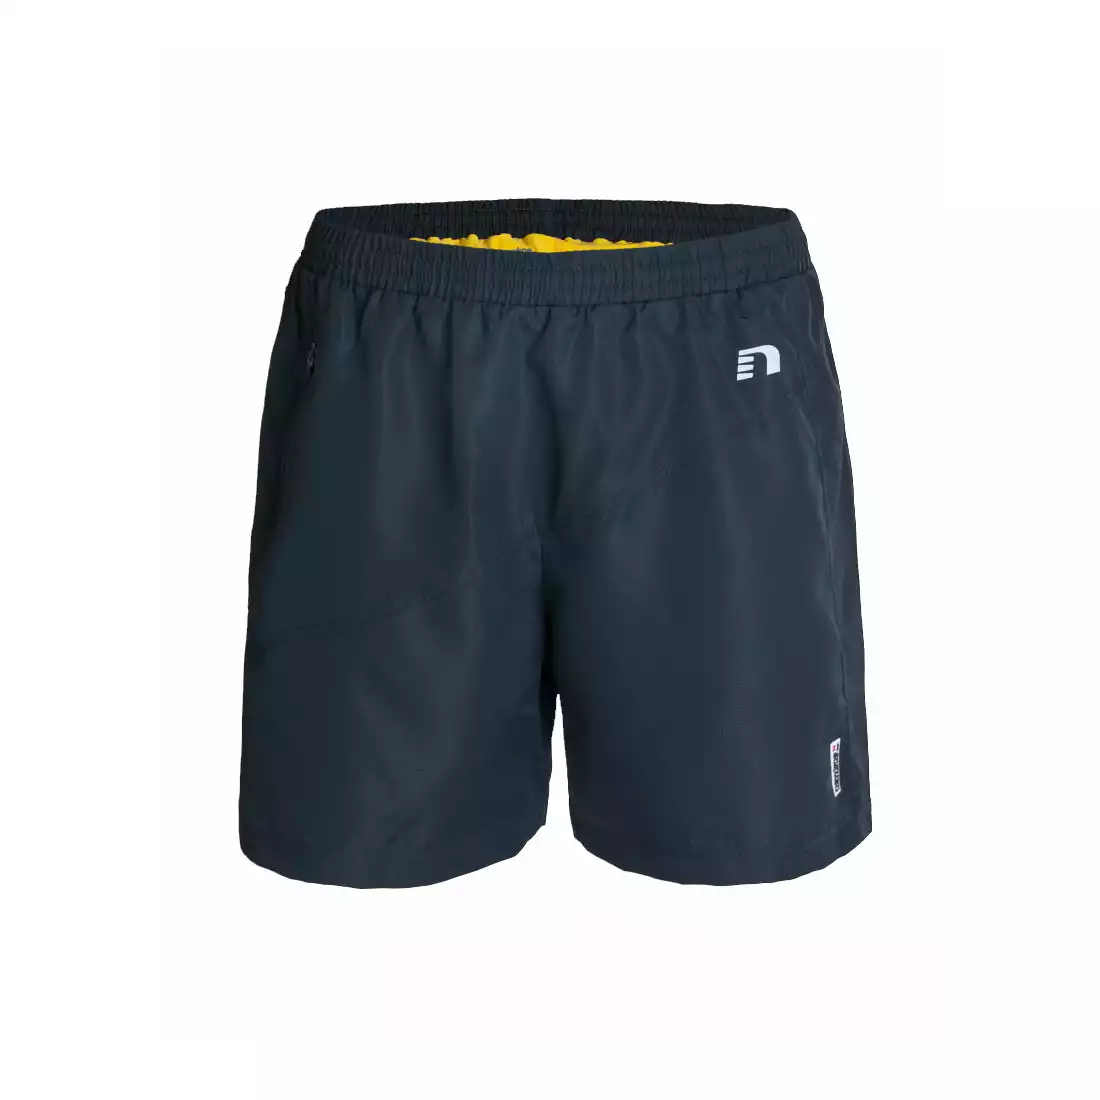 NEWLINE IMOTION 2 LAY shorts - męskie szorty do biegania 11744-275